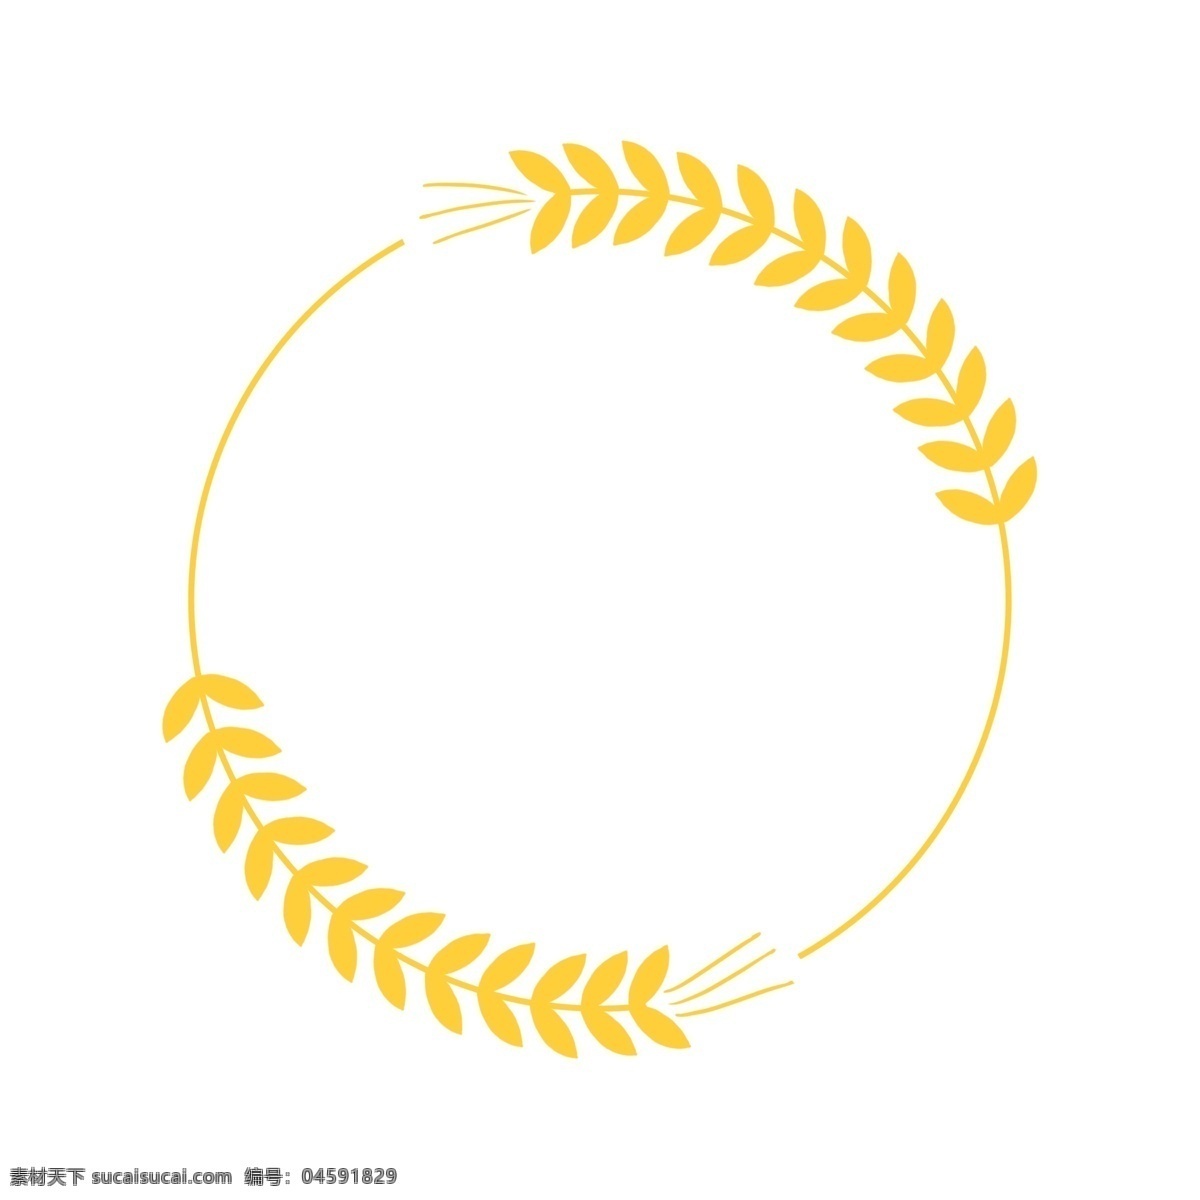 金色 水稻 圆 框 稻谷 小麦 粮食 食物 主食 海报装饰 二十四节气 插画 金色水稻圆框 圆形